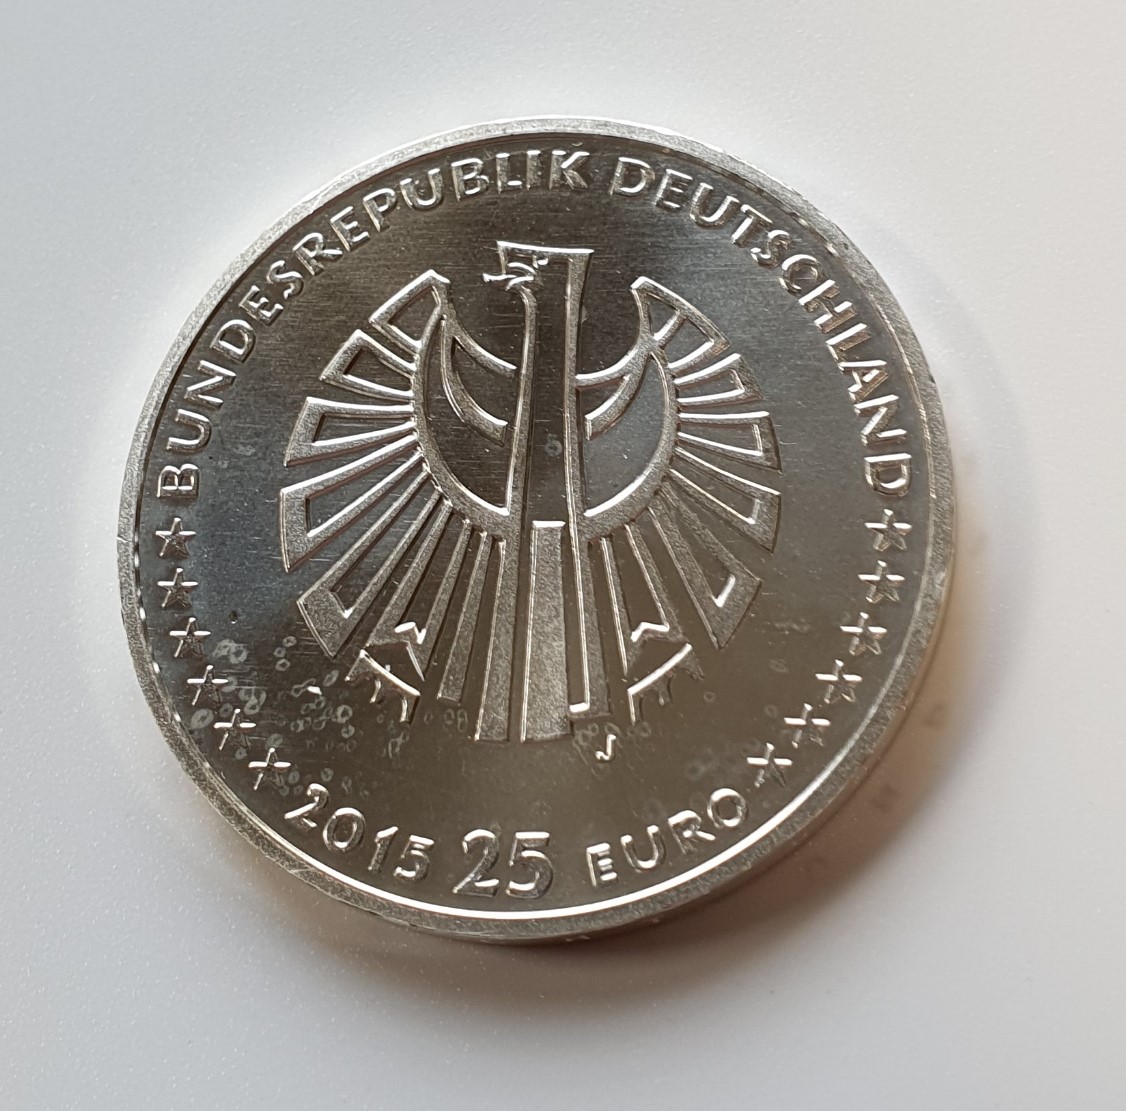  Deutschland 25 Euro 2015 J Silbermünze 999 Silber 25 Jahre Deutsche Einheit Spiegelglanz   